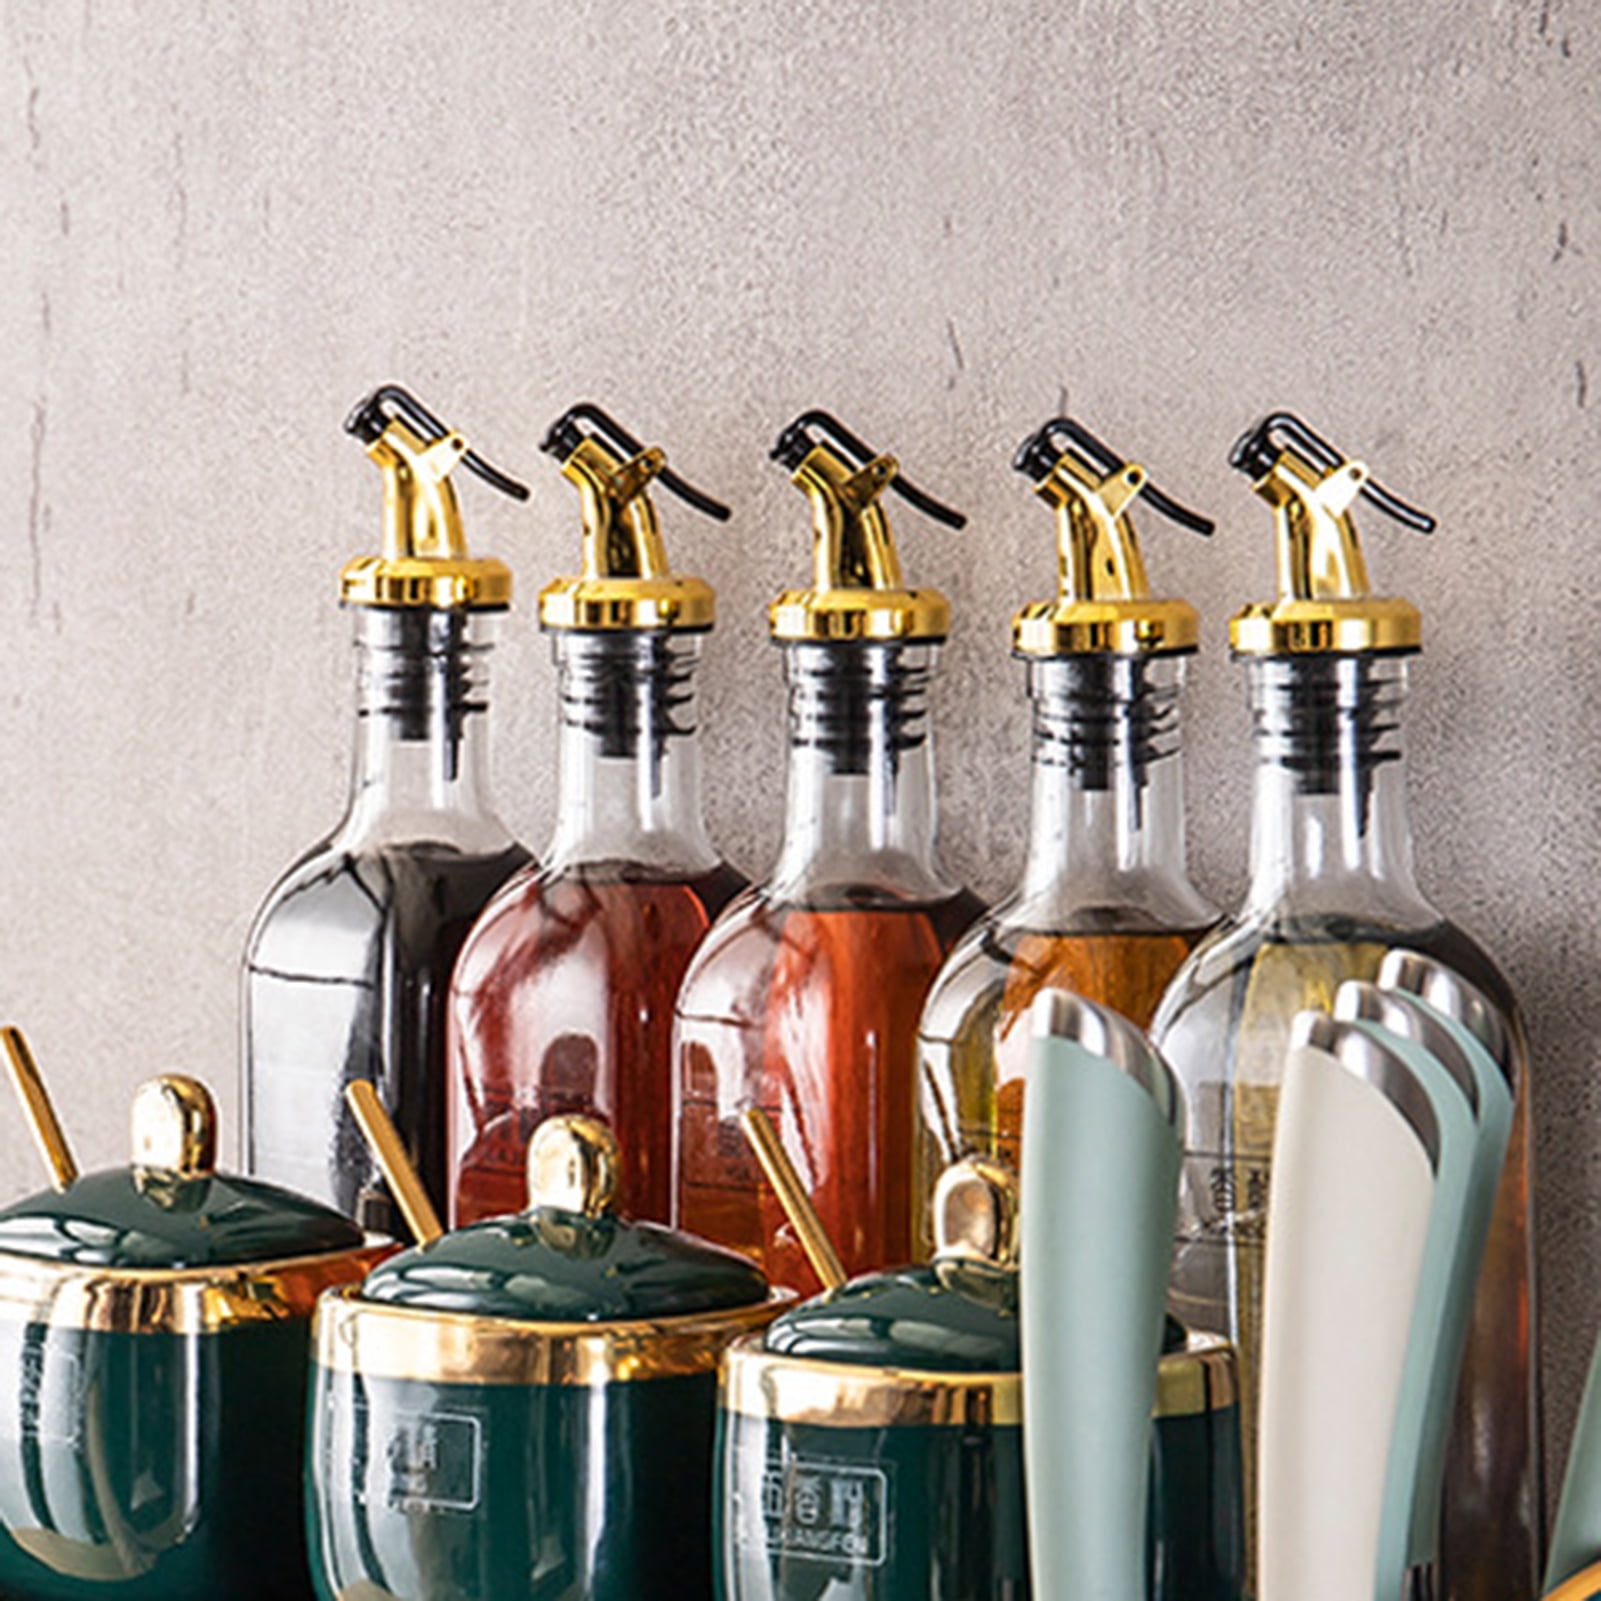 Oil and Vinegar Bottles Cruets Dispensers Olive Oil Sprayer Bottle Cap Stopper Liquor Dispenser Leak Proof Pourer Kitchen Accessories 